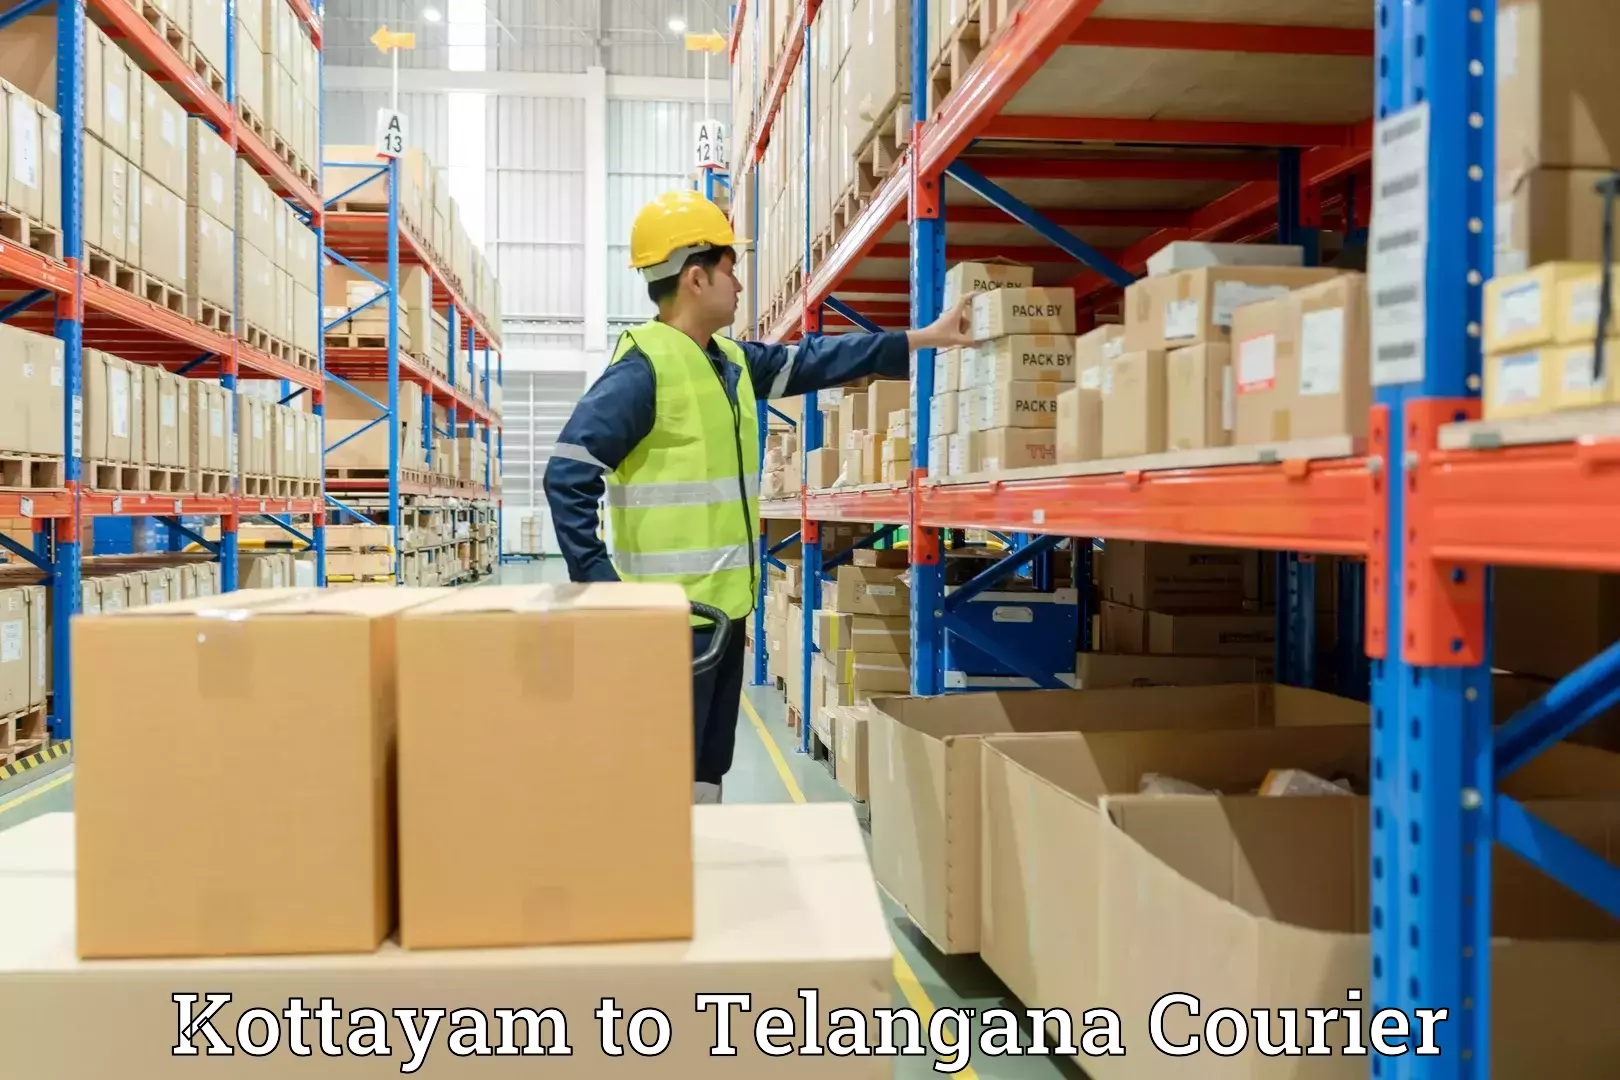 Home shifting experts Kottayam to Telangana